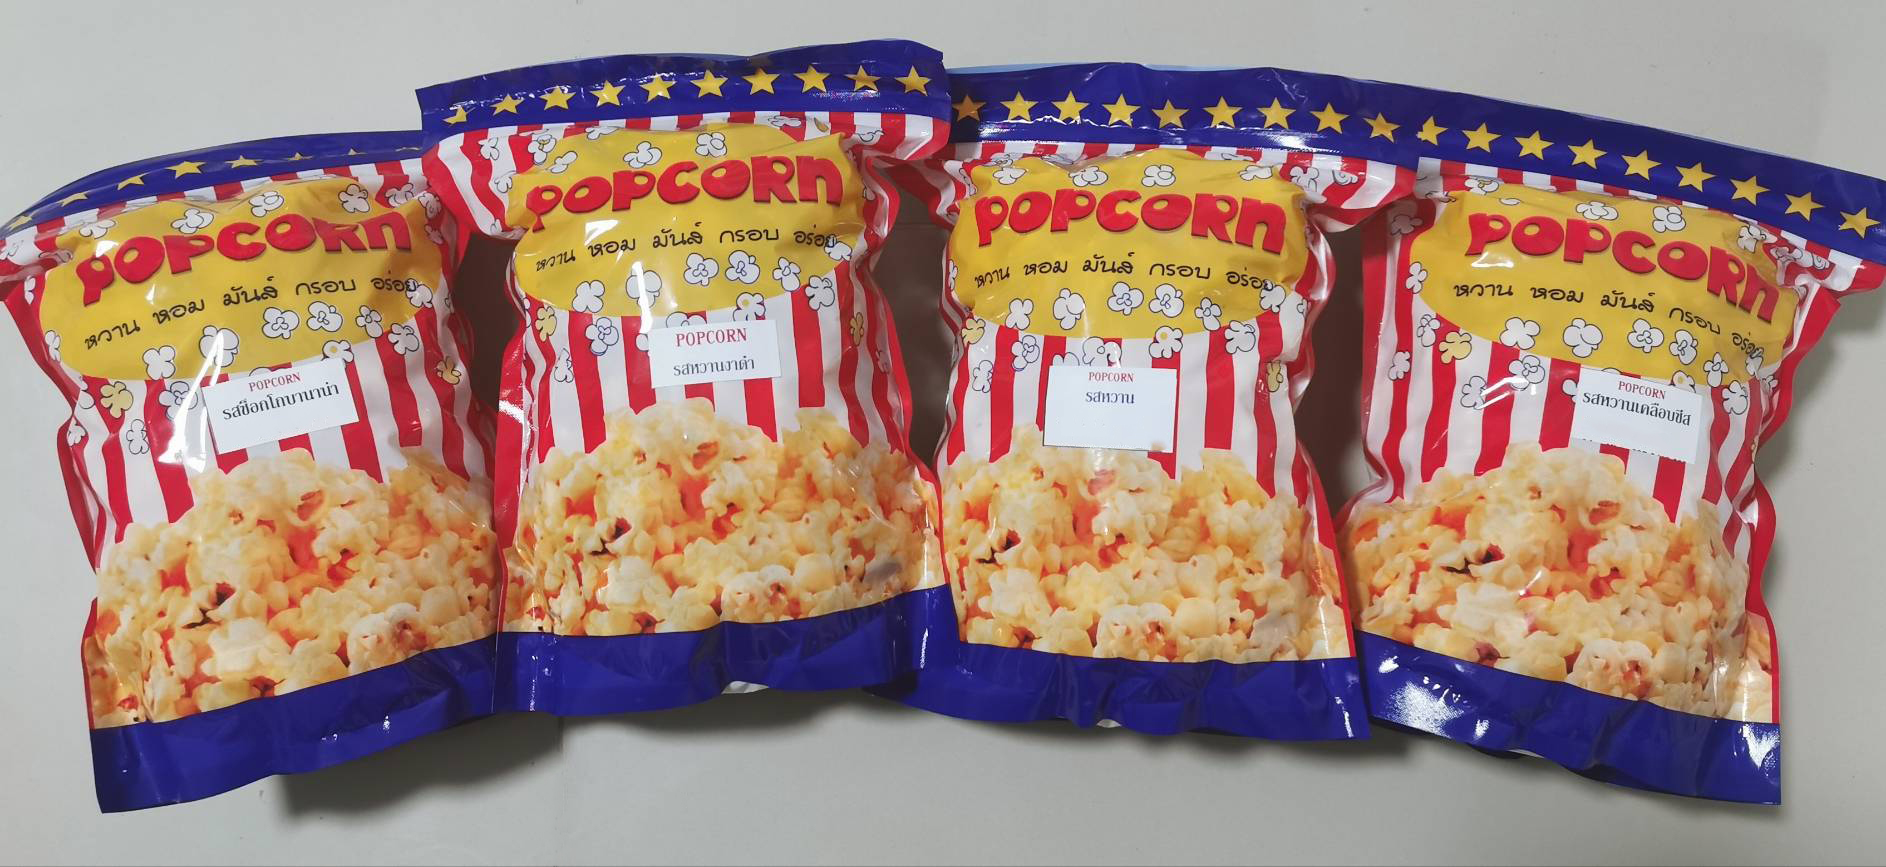 ป๊อปคอร์น​ ( popcorn )​ หลากรส by บ้านป๊อบคอร์น​